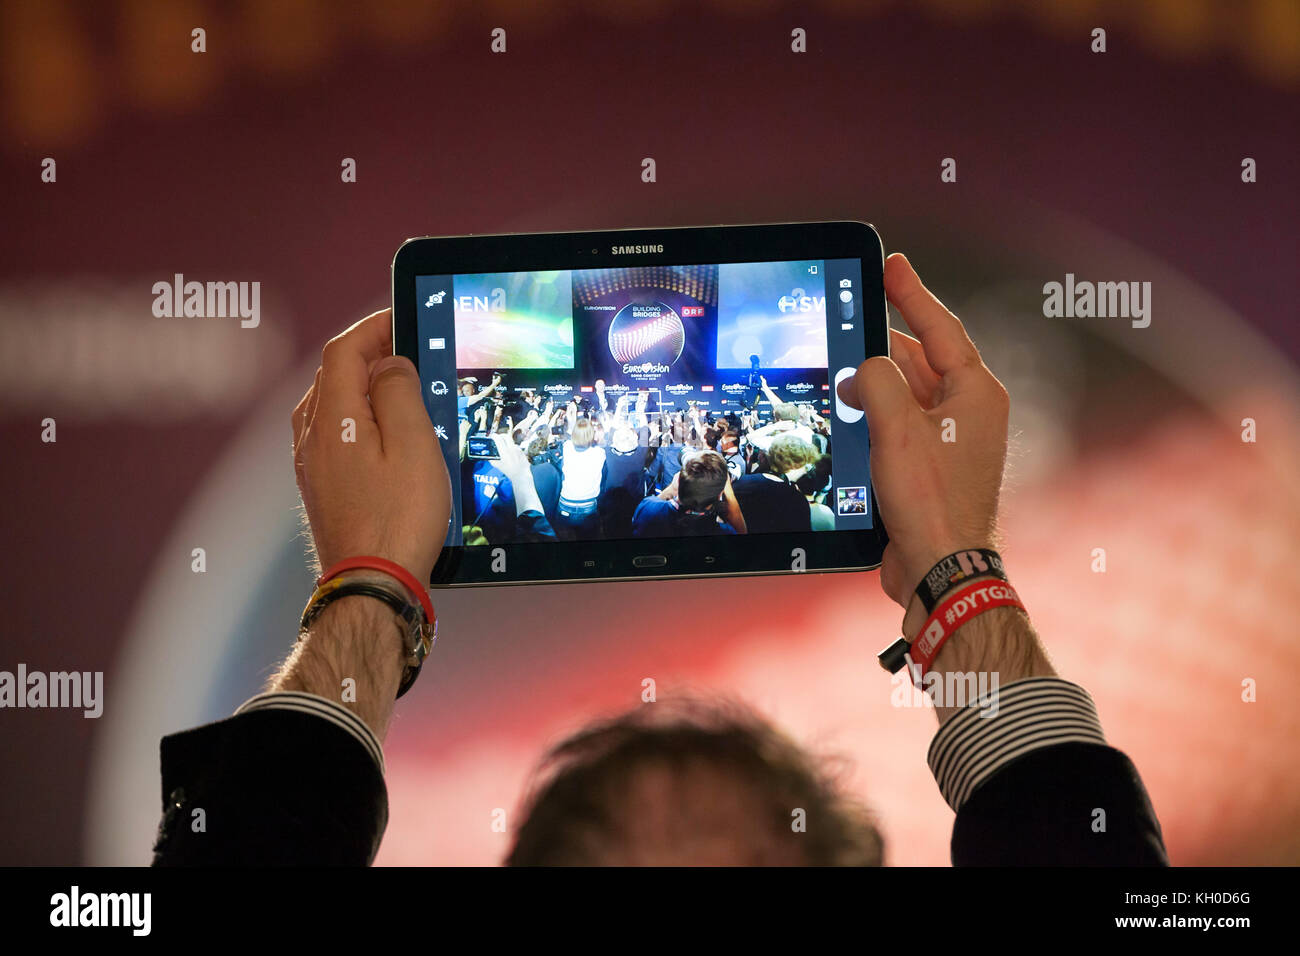 Eine Person hält einen Samsung Tablet-Computer hoch und filmt die Pressekonferenz des schwedischen Eurovision Song Contest Gewinners Måns Zelmerlöw beim Eurovision Song Contest in Wien. Stockfoto